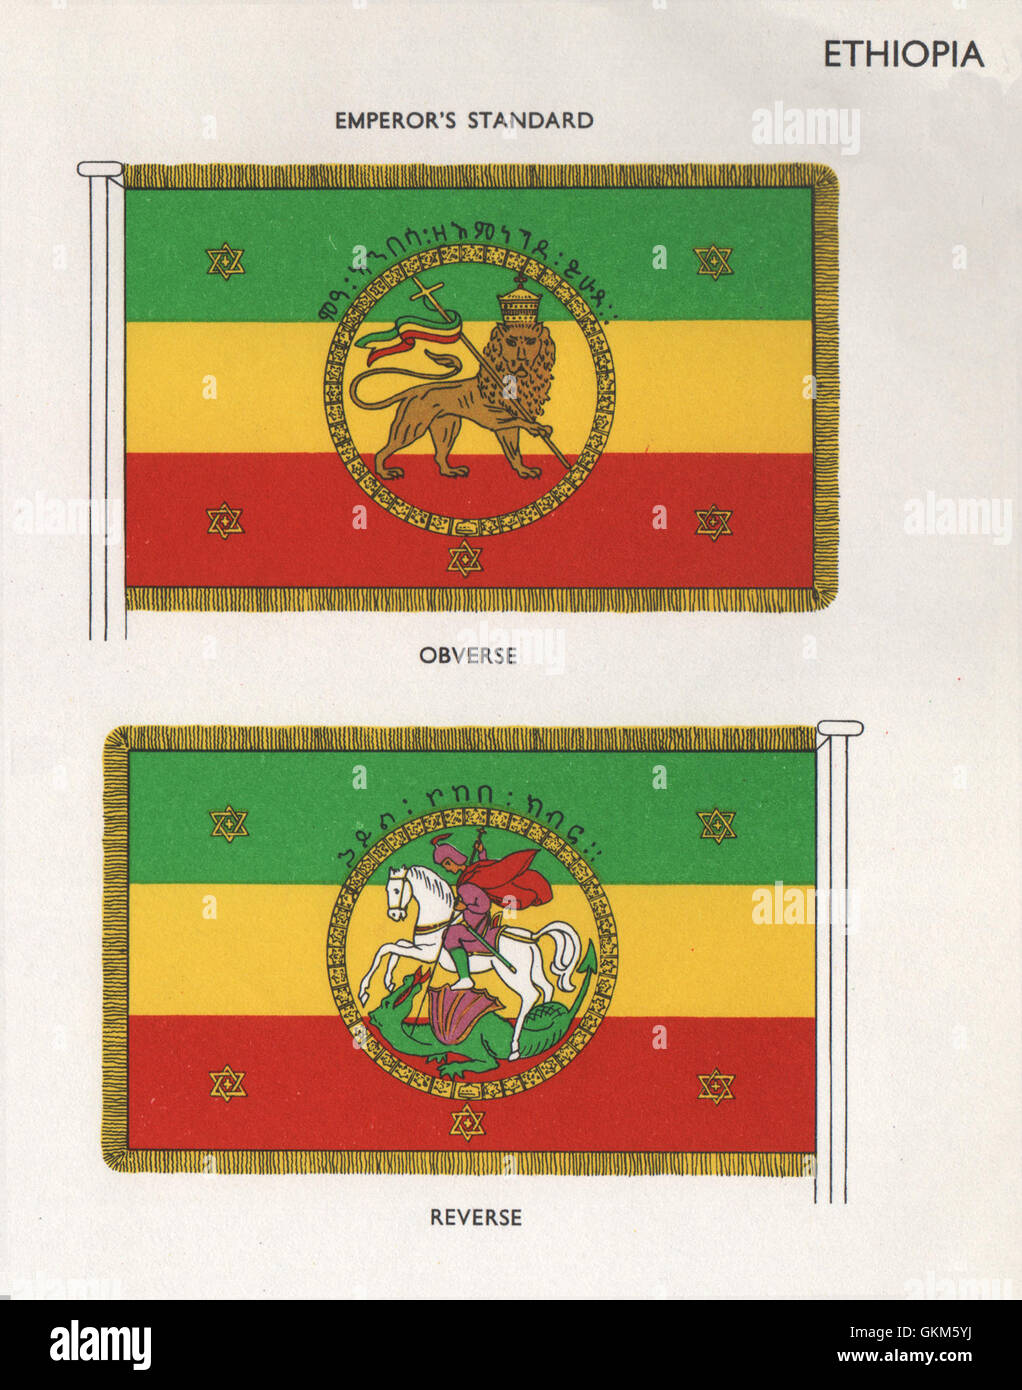 Drapeaux de l'Éthiopie. Standard de l'empereur. Avers. Marche arrière, vintage print 1958 Banque D'Images